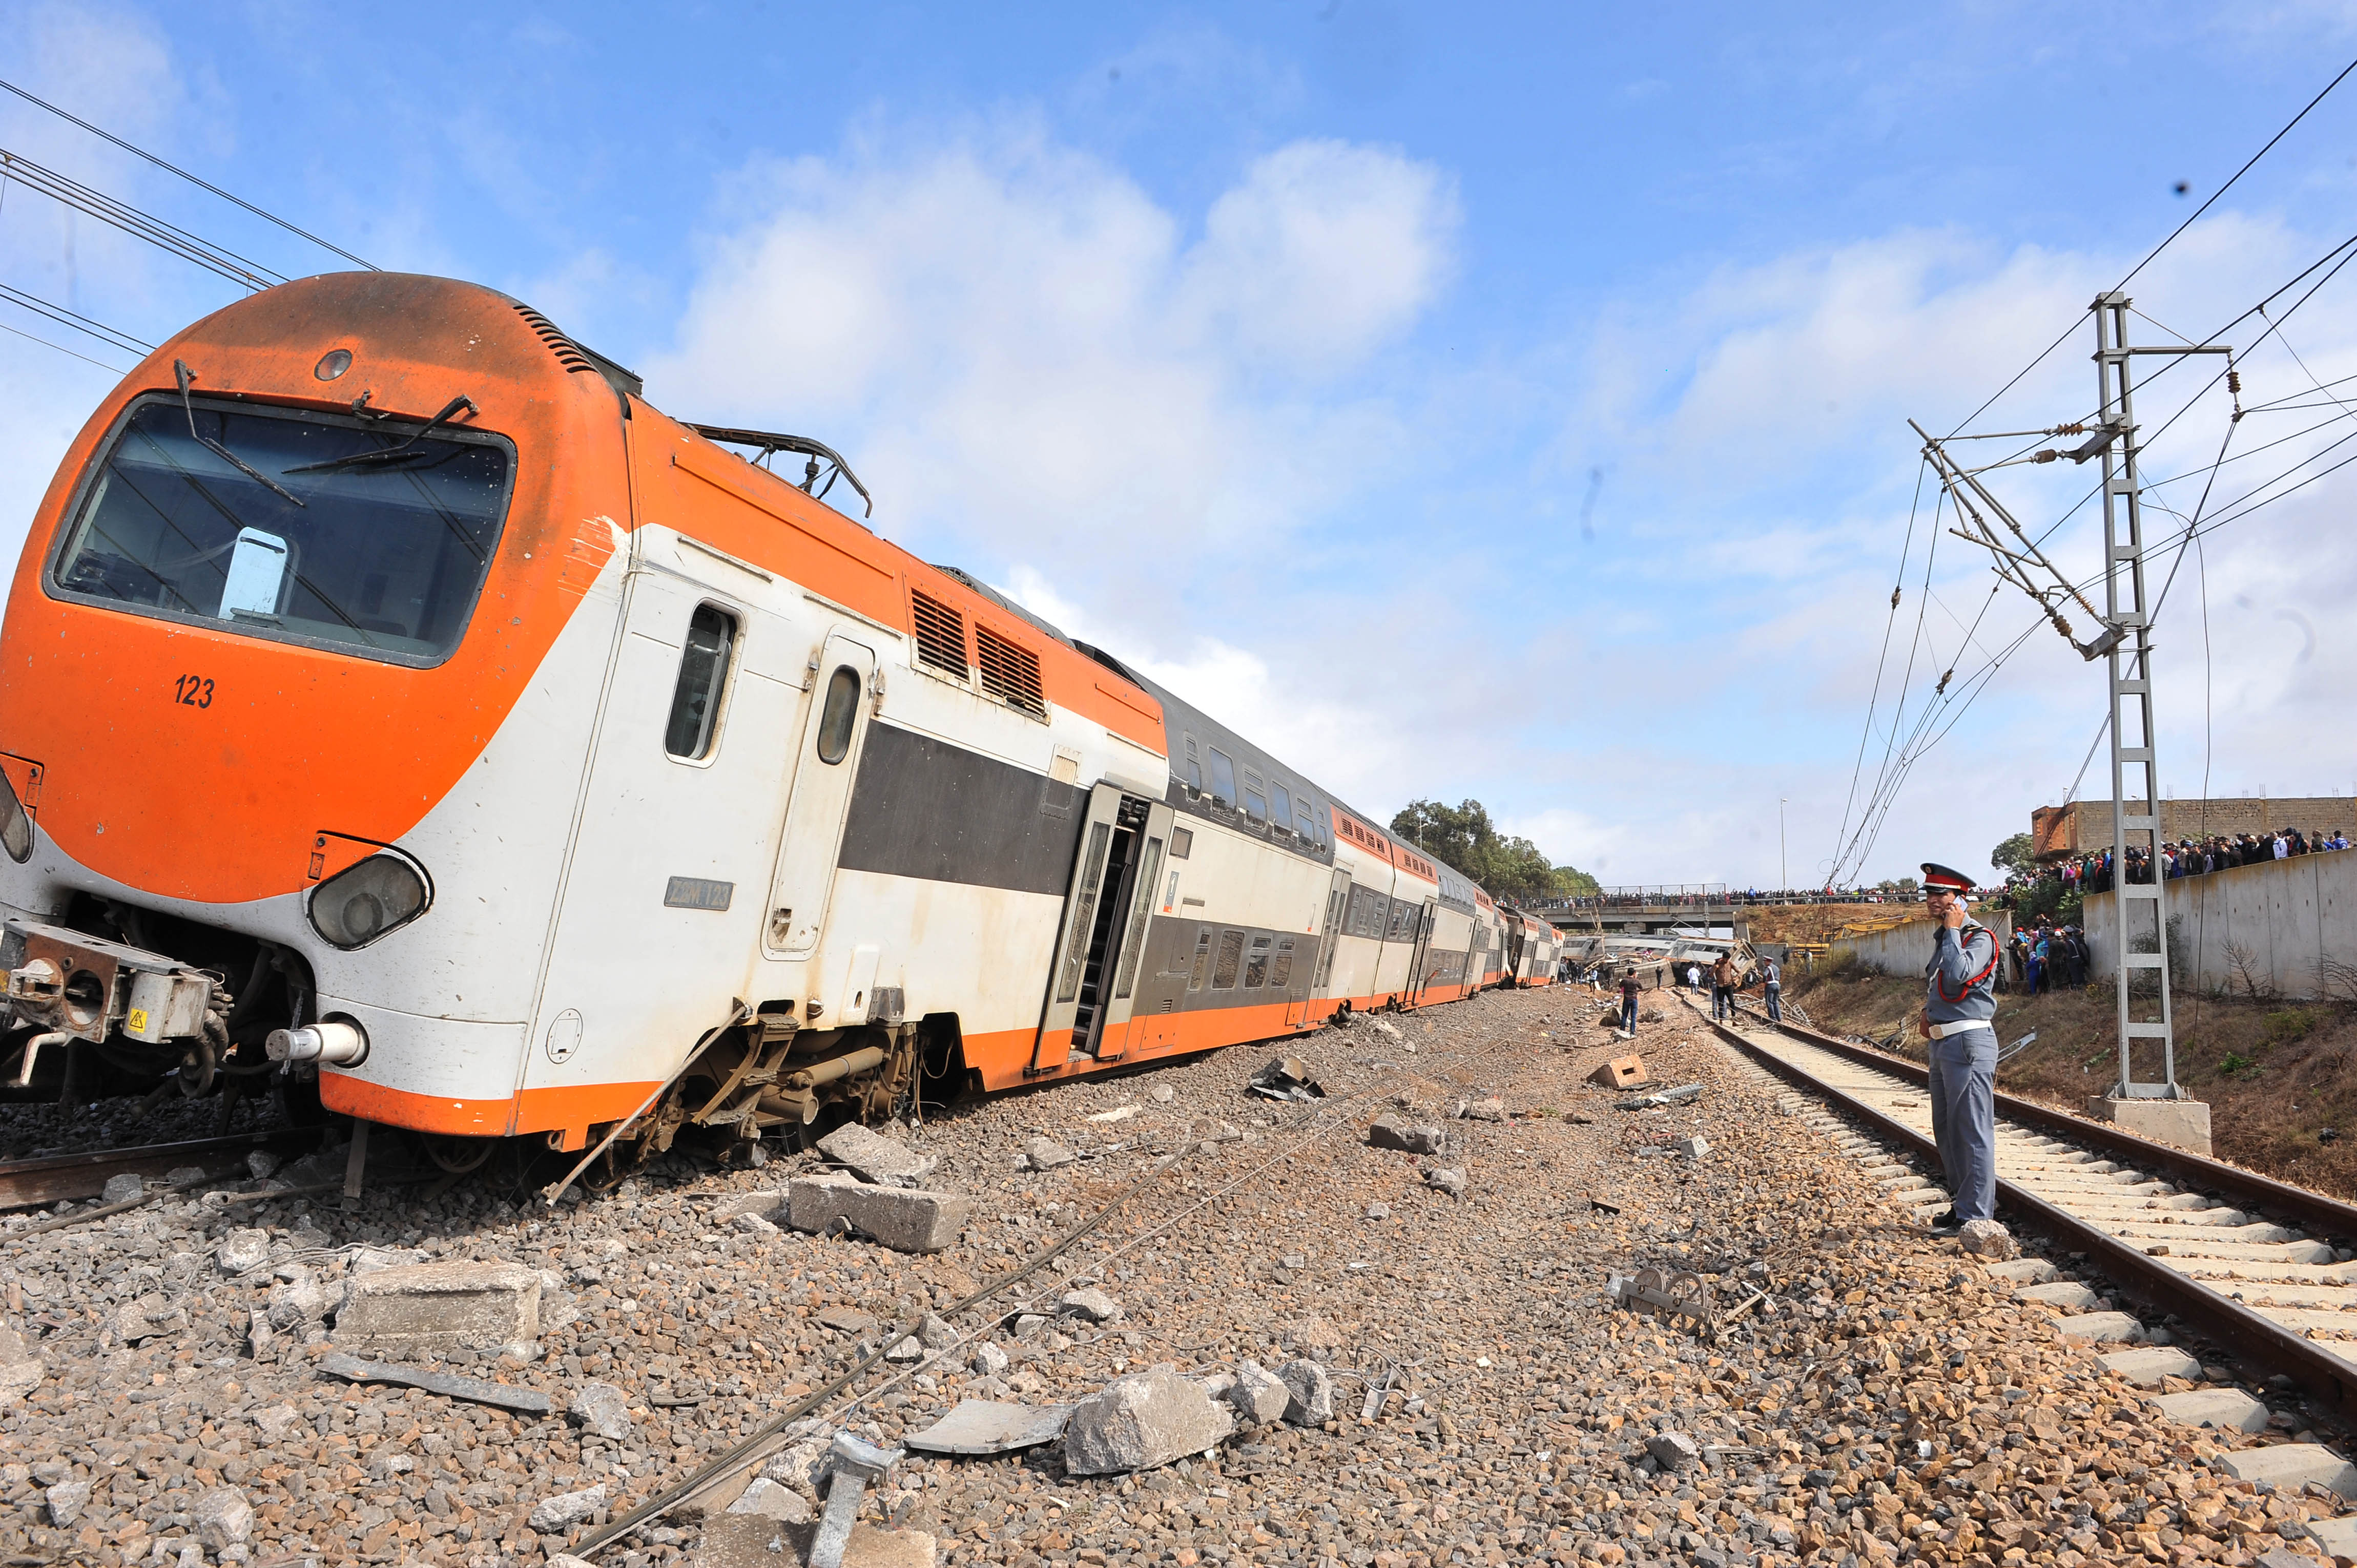 انحراف قطار عن سكته بنواحي الدار البيضاء يتسبب في اصابات بكسور